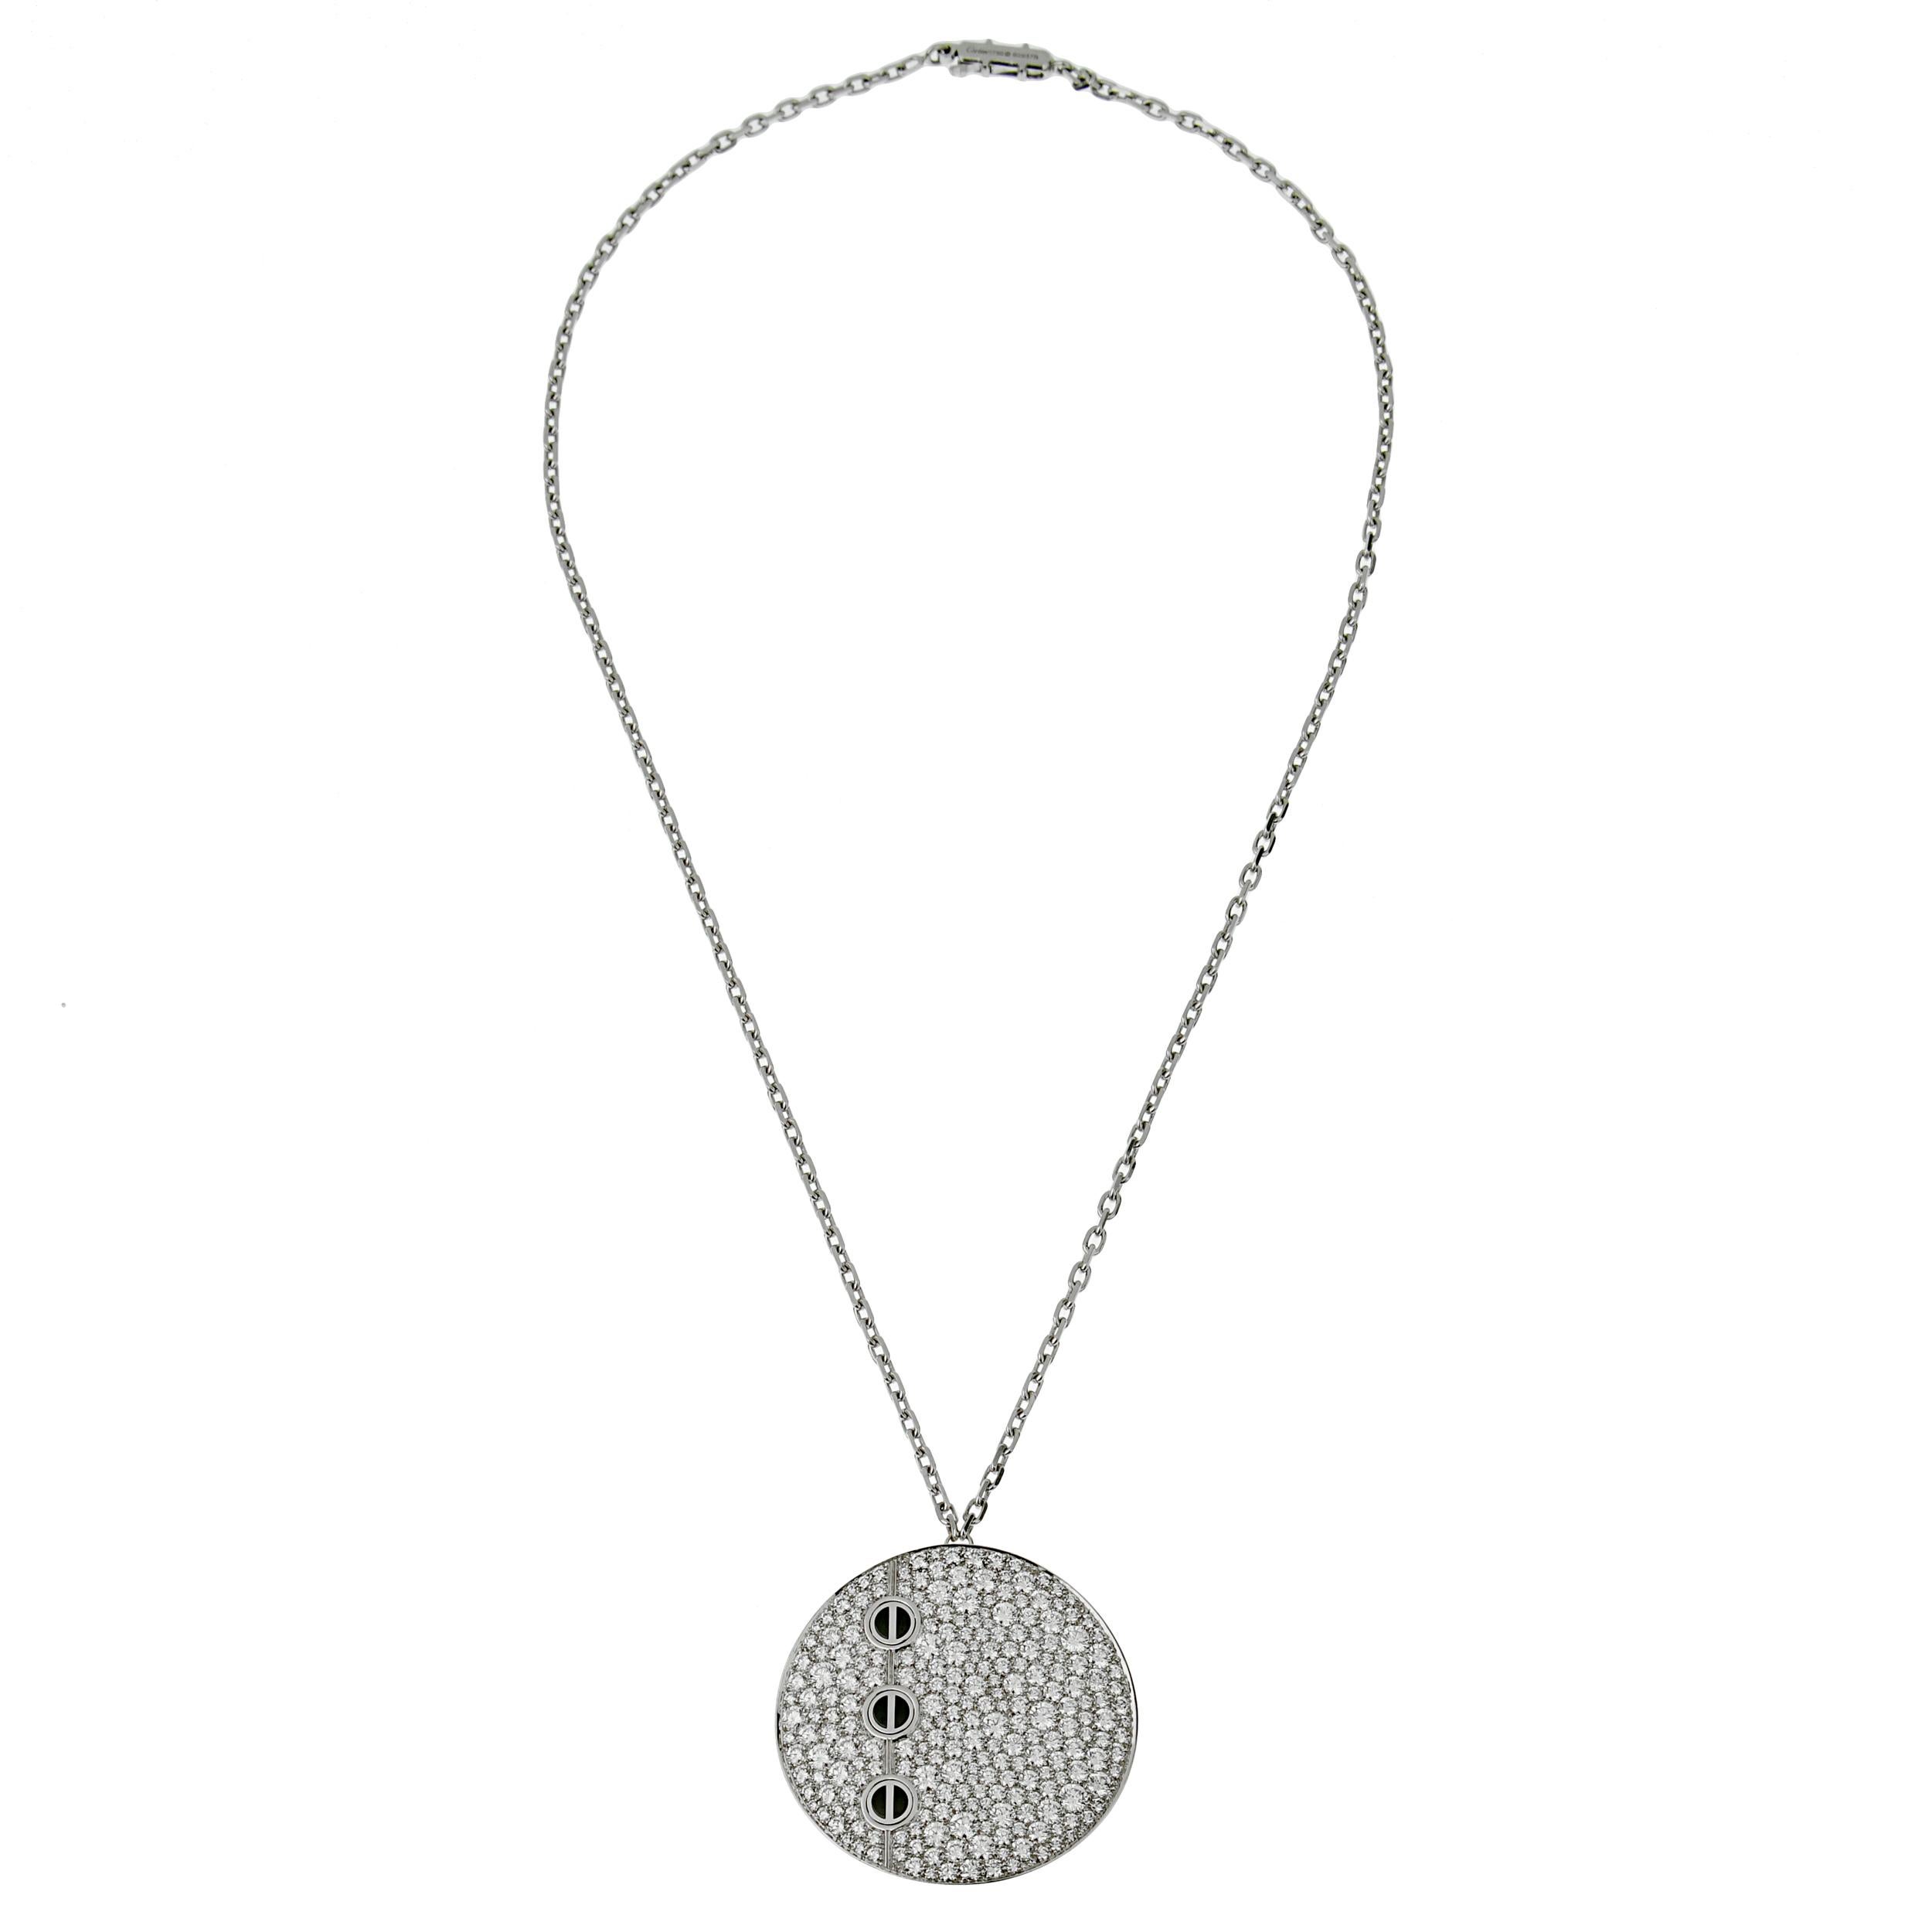 Magnifique collier en diamant à pendentif Love de Cartier, datant des années 2000, mettant en valeur plus de 5 ct des plus beaux diamants ronds de taille brillant de Cartier, sertis de 3 motifs de vis emblématiques en onyx. Le pendentif mesure 1,37